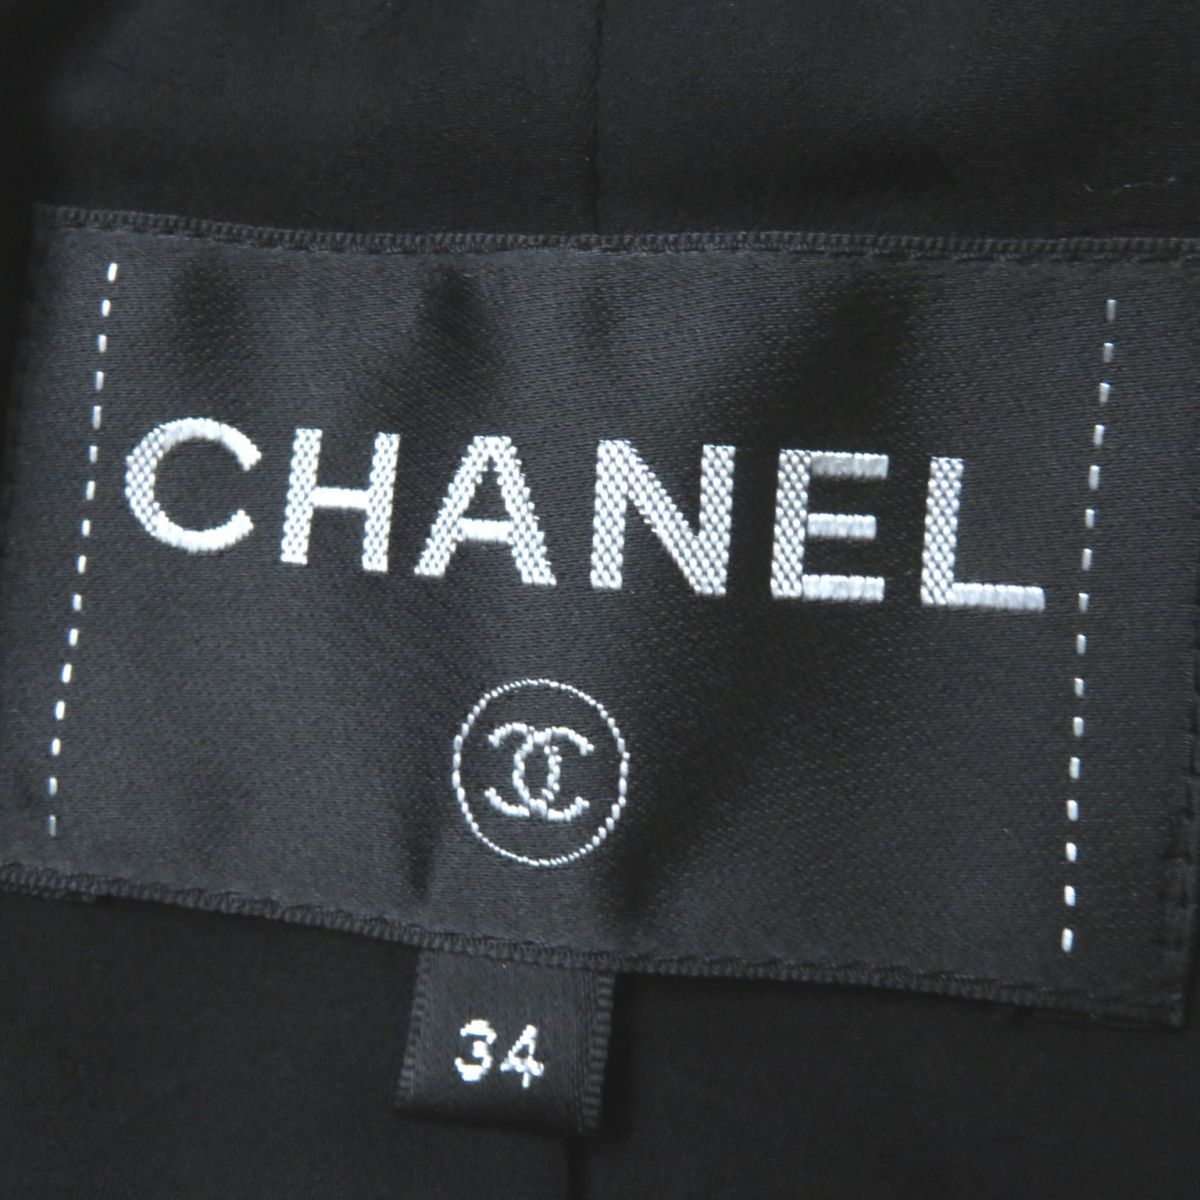  превосходный товар * Франция производства CHANEL Chanel P62079 женский здесь Mark кнопка имеется одиночный цвет твид пальто черный обратная сторона шелк 100% 34